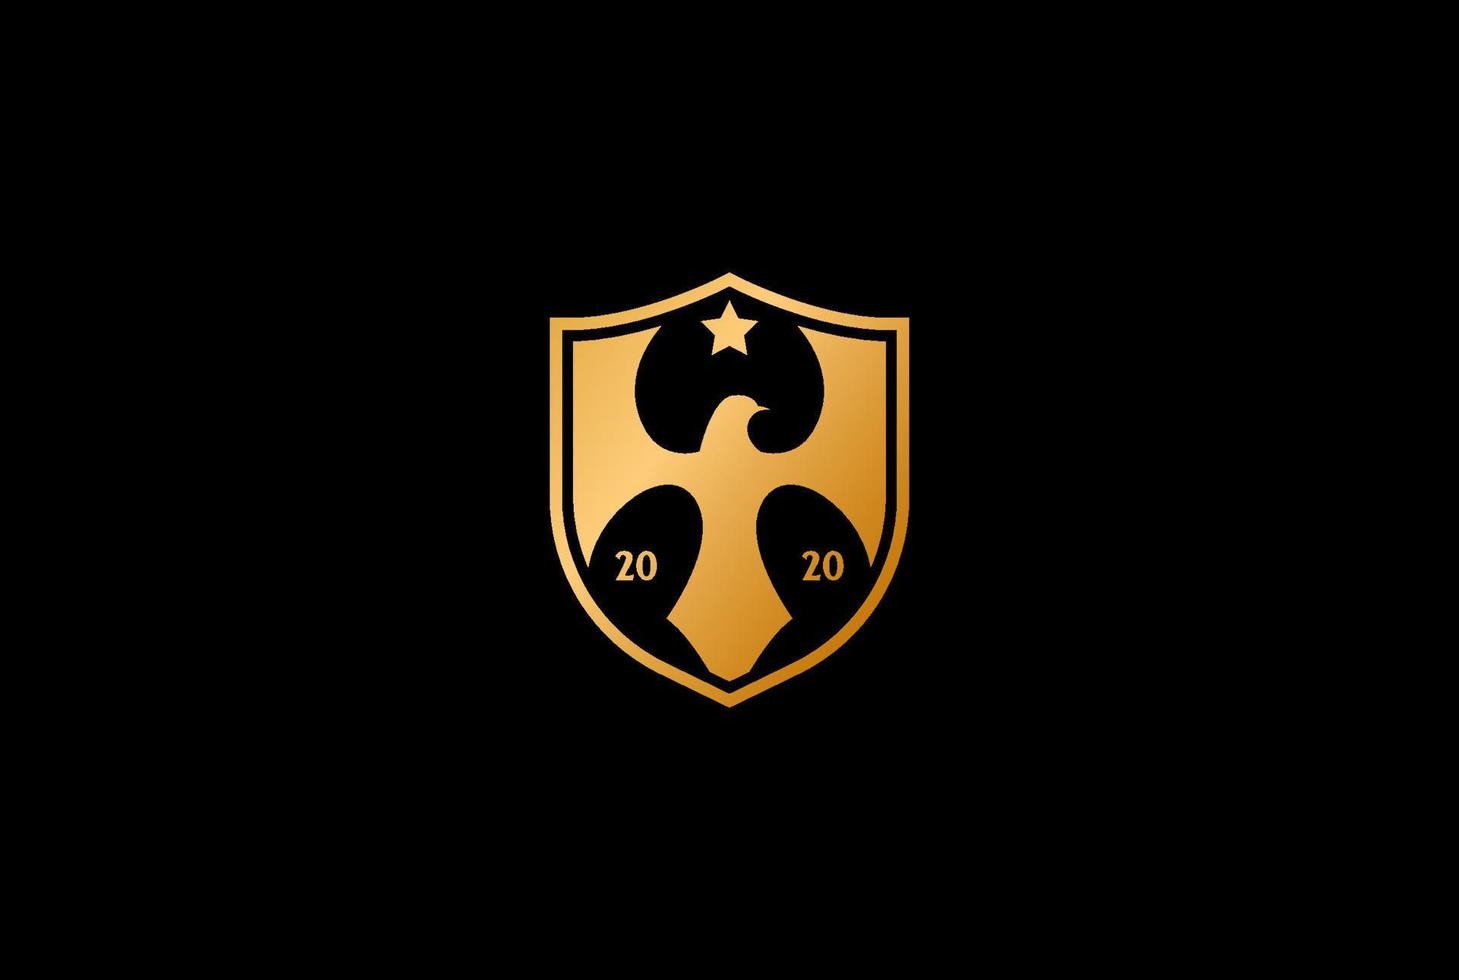 vetor de design de logotipo de escudo de falcão de águia dourada de luxo elegante